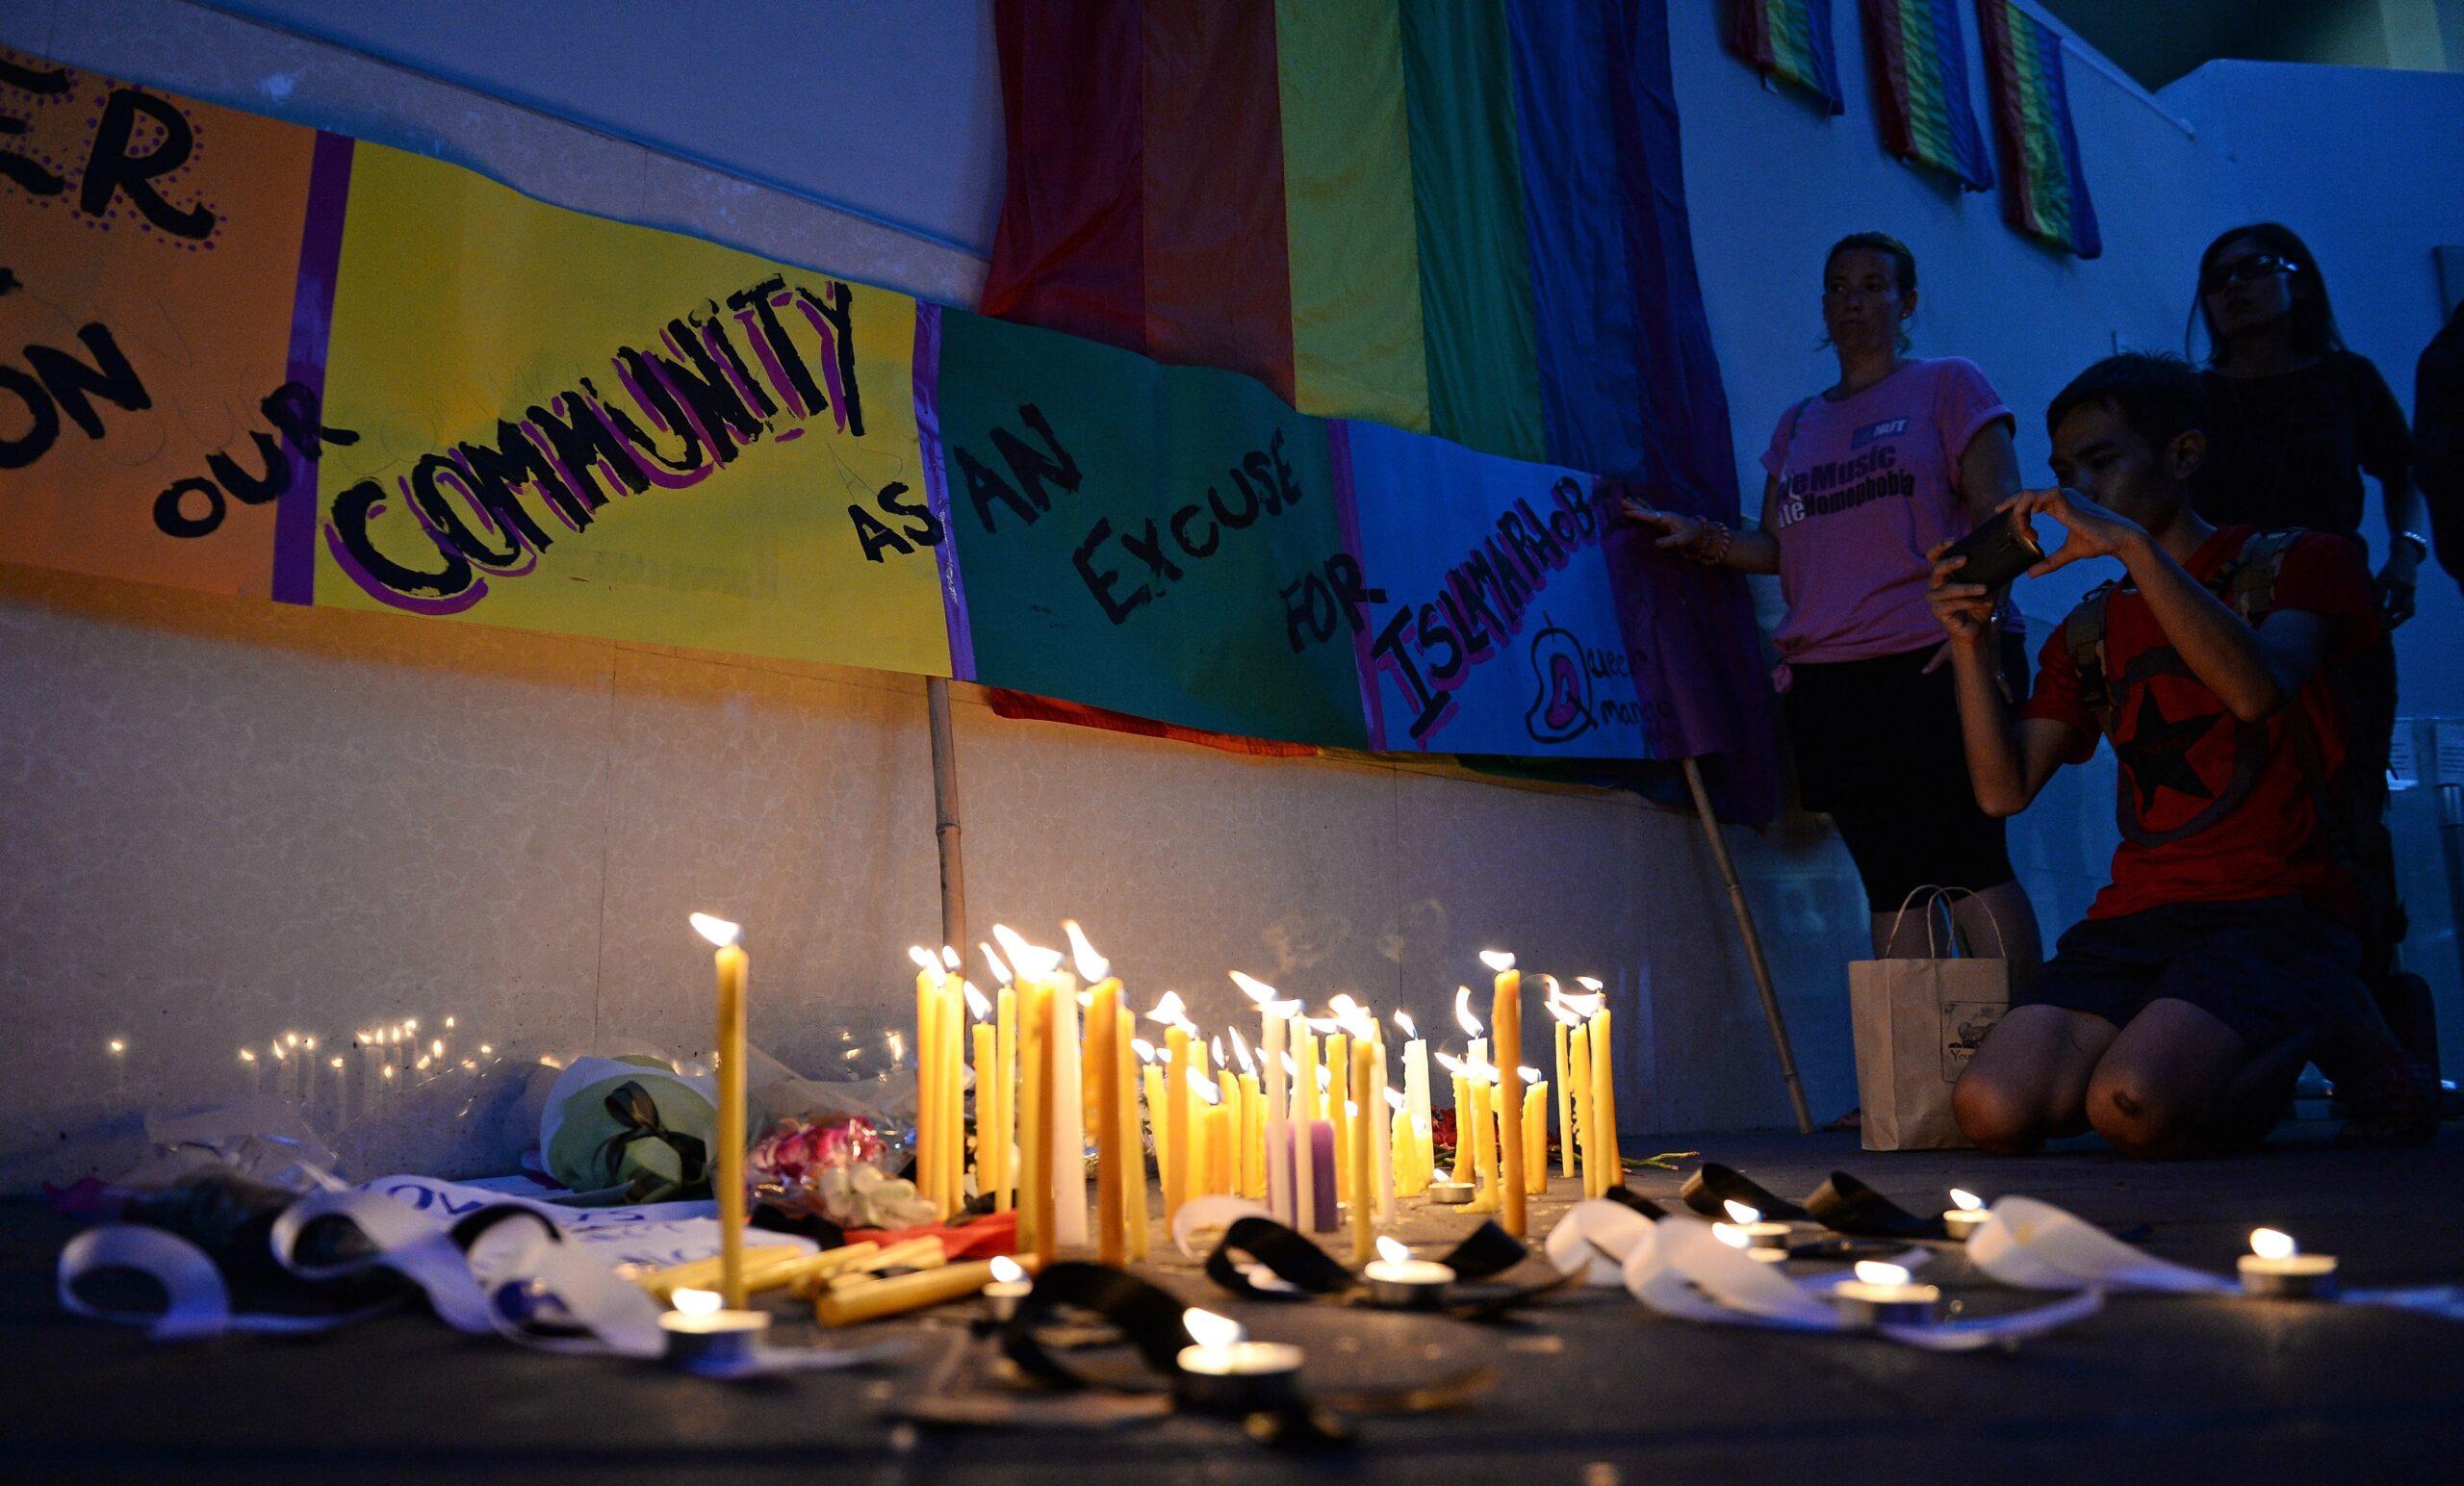 Cuatro mexicanos murieron en el ataque al bar Pulse de Orlando, confirma la Cancillería